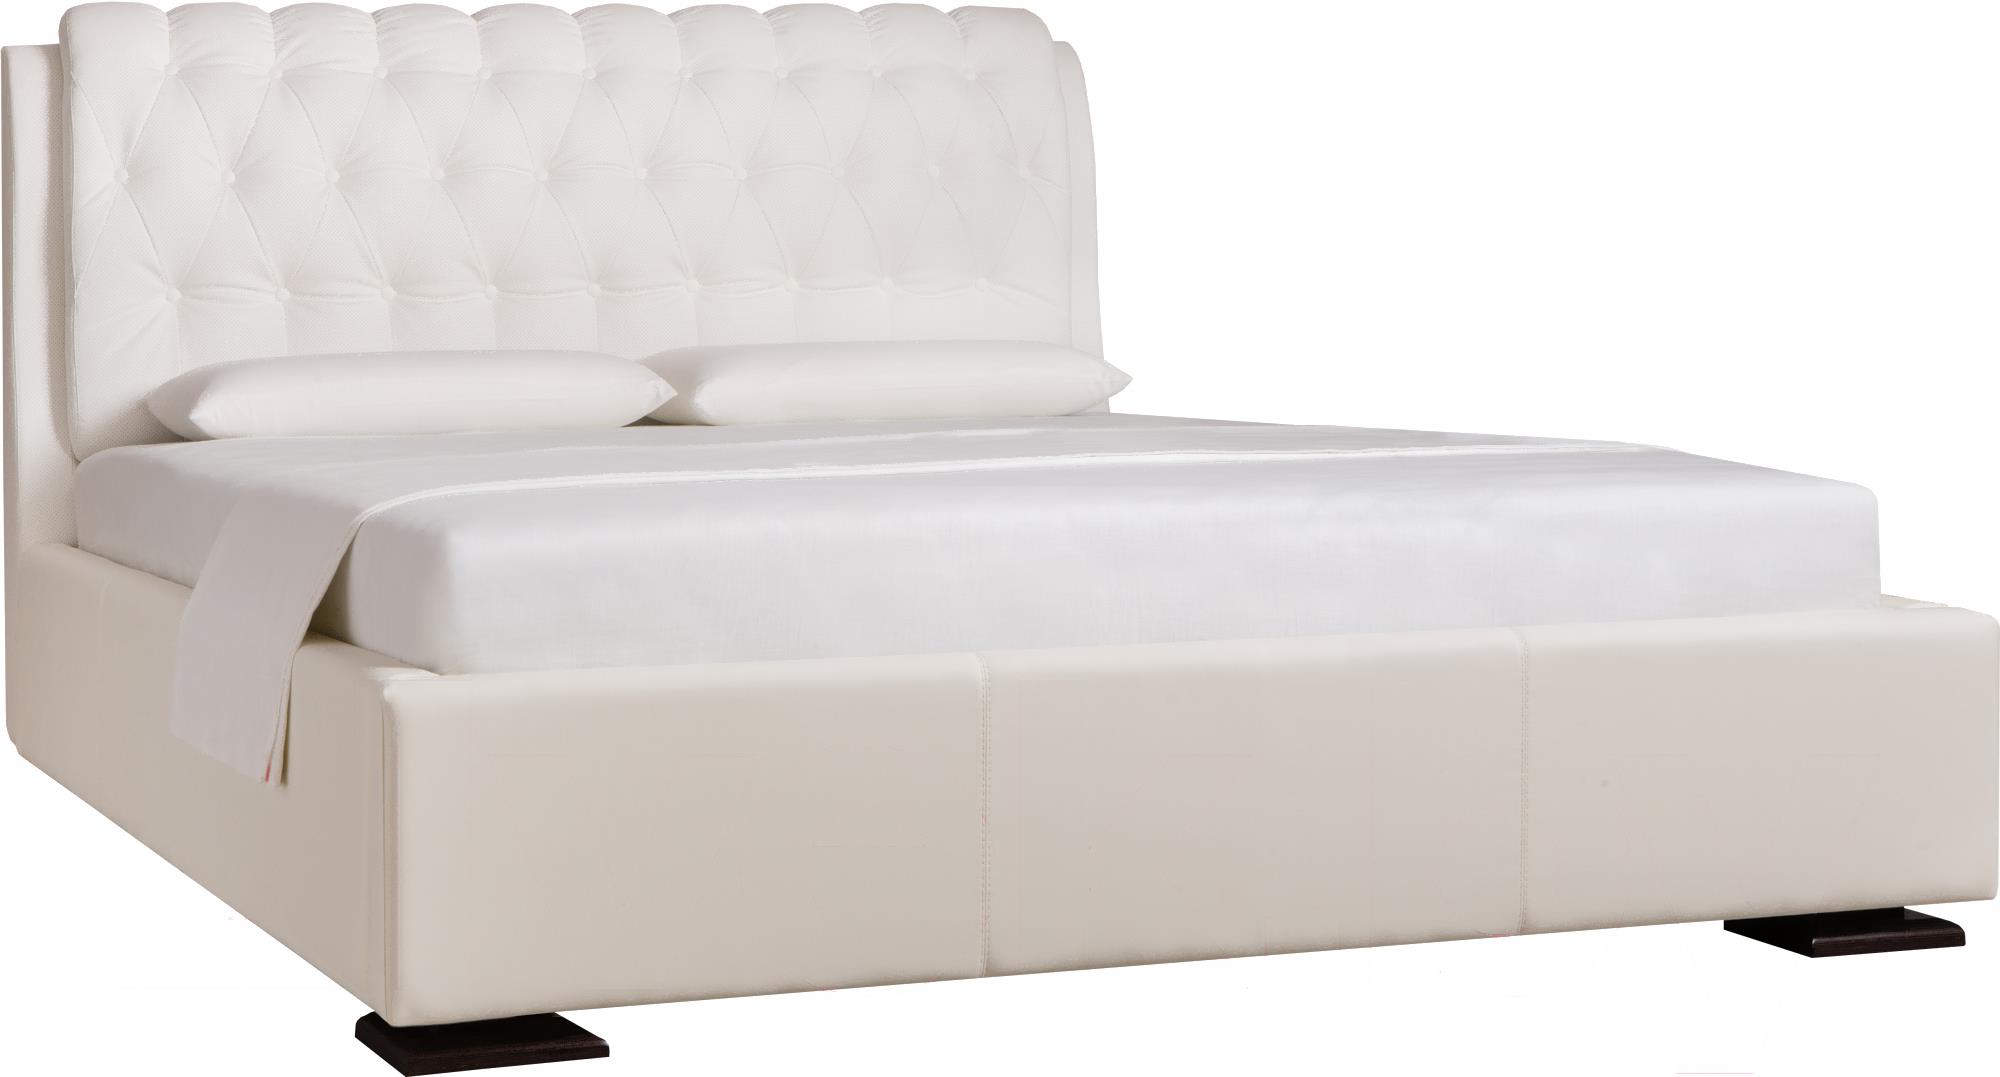 Двуспальная кровать ДЕНЬНОЧЬ Эстель к03 kr00-28le 160x200 (pr02/pr02)